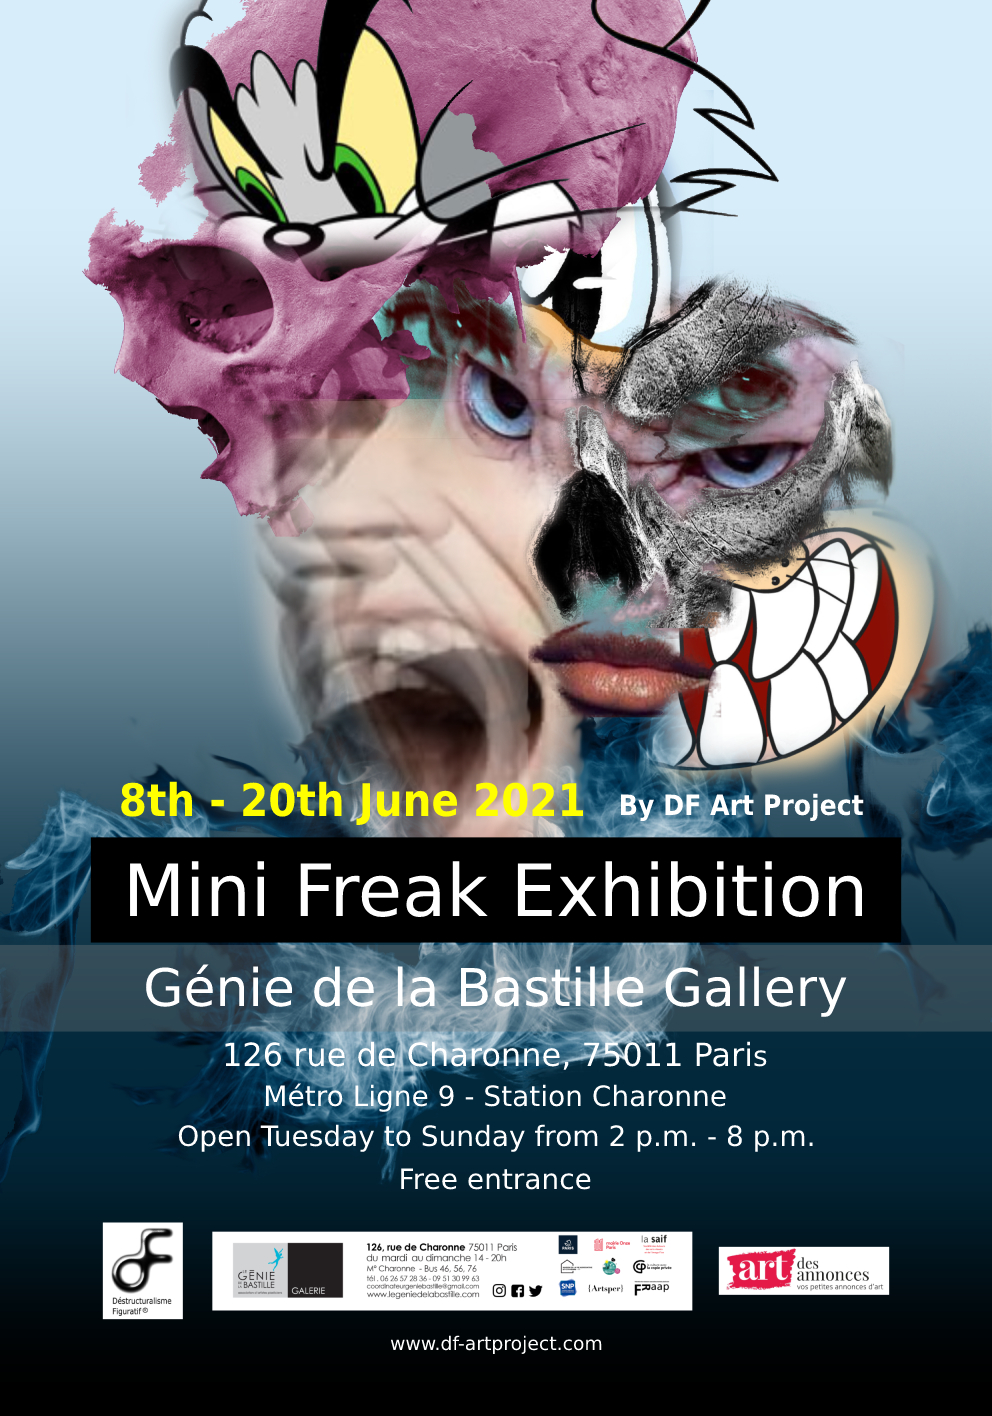 Mini Freak Exhibition - Génie de la Bastille Gallery